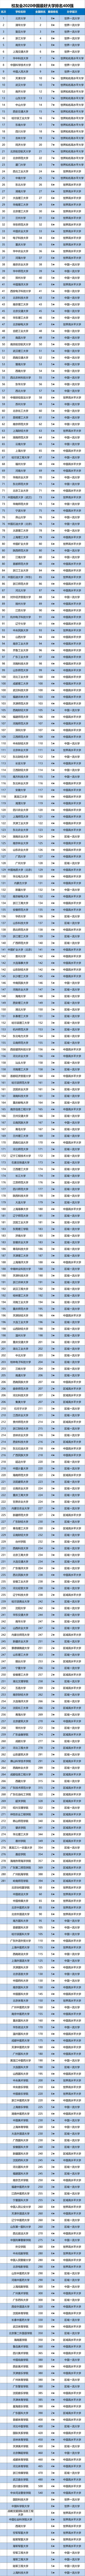 2020中国高校排名榜_2020中国大学排名发布!复旦排名第六!快来看看你的大